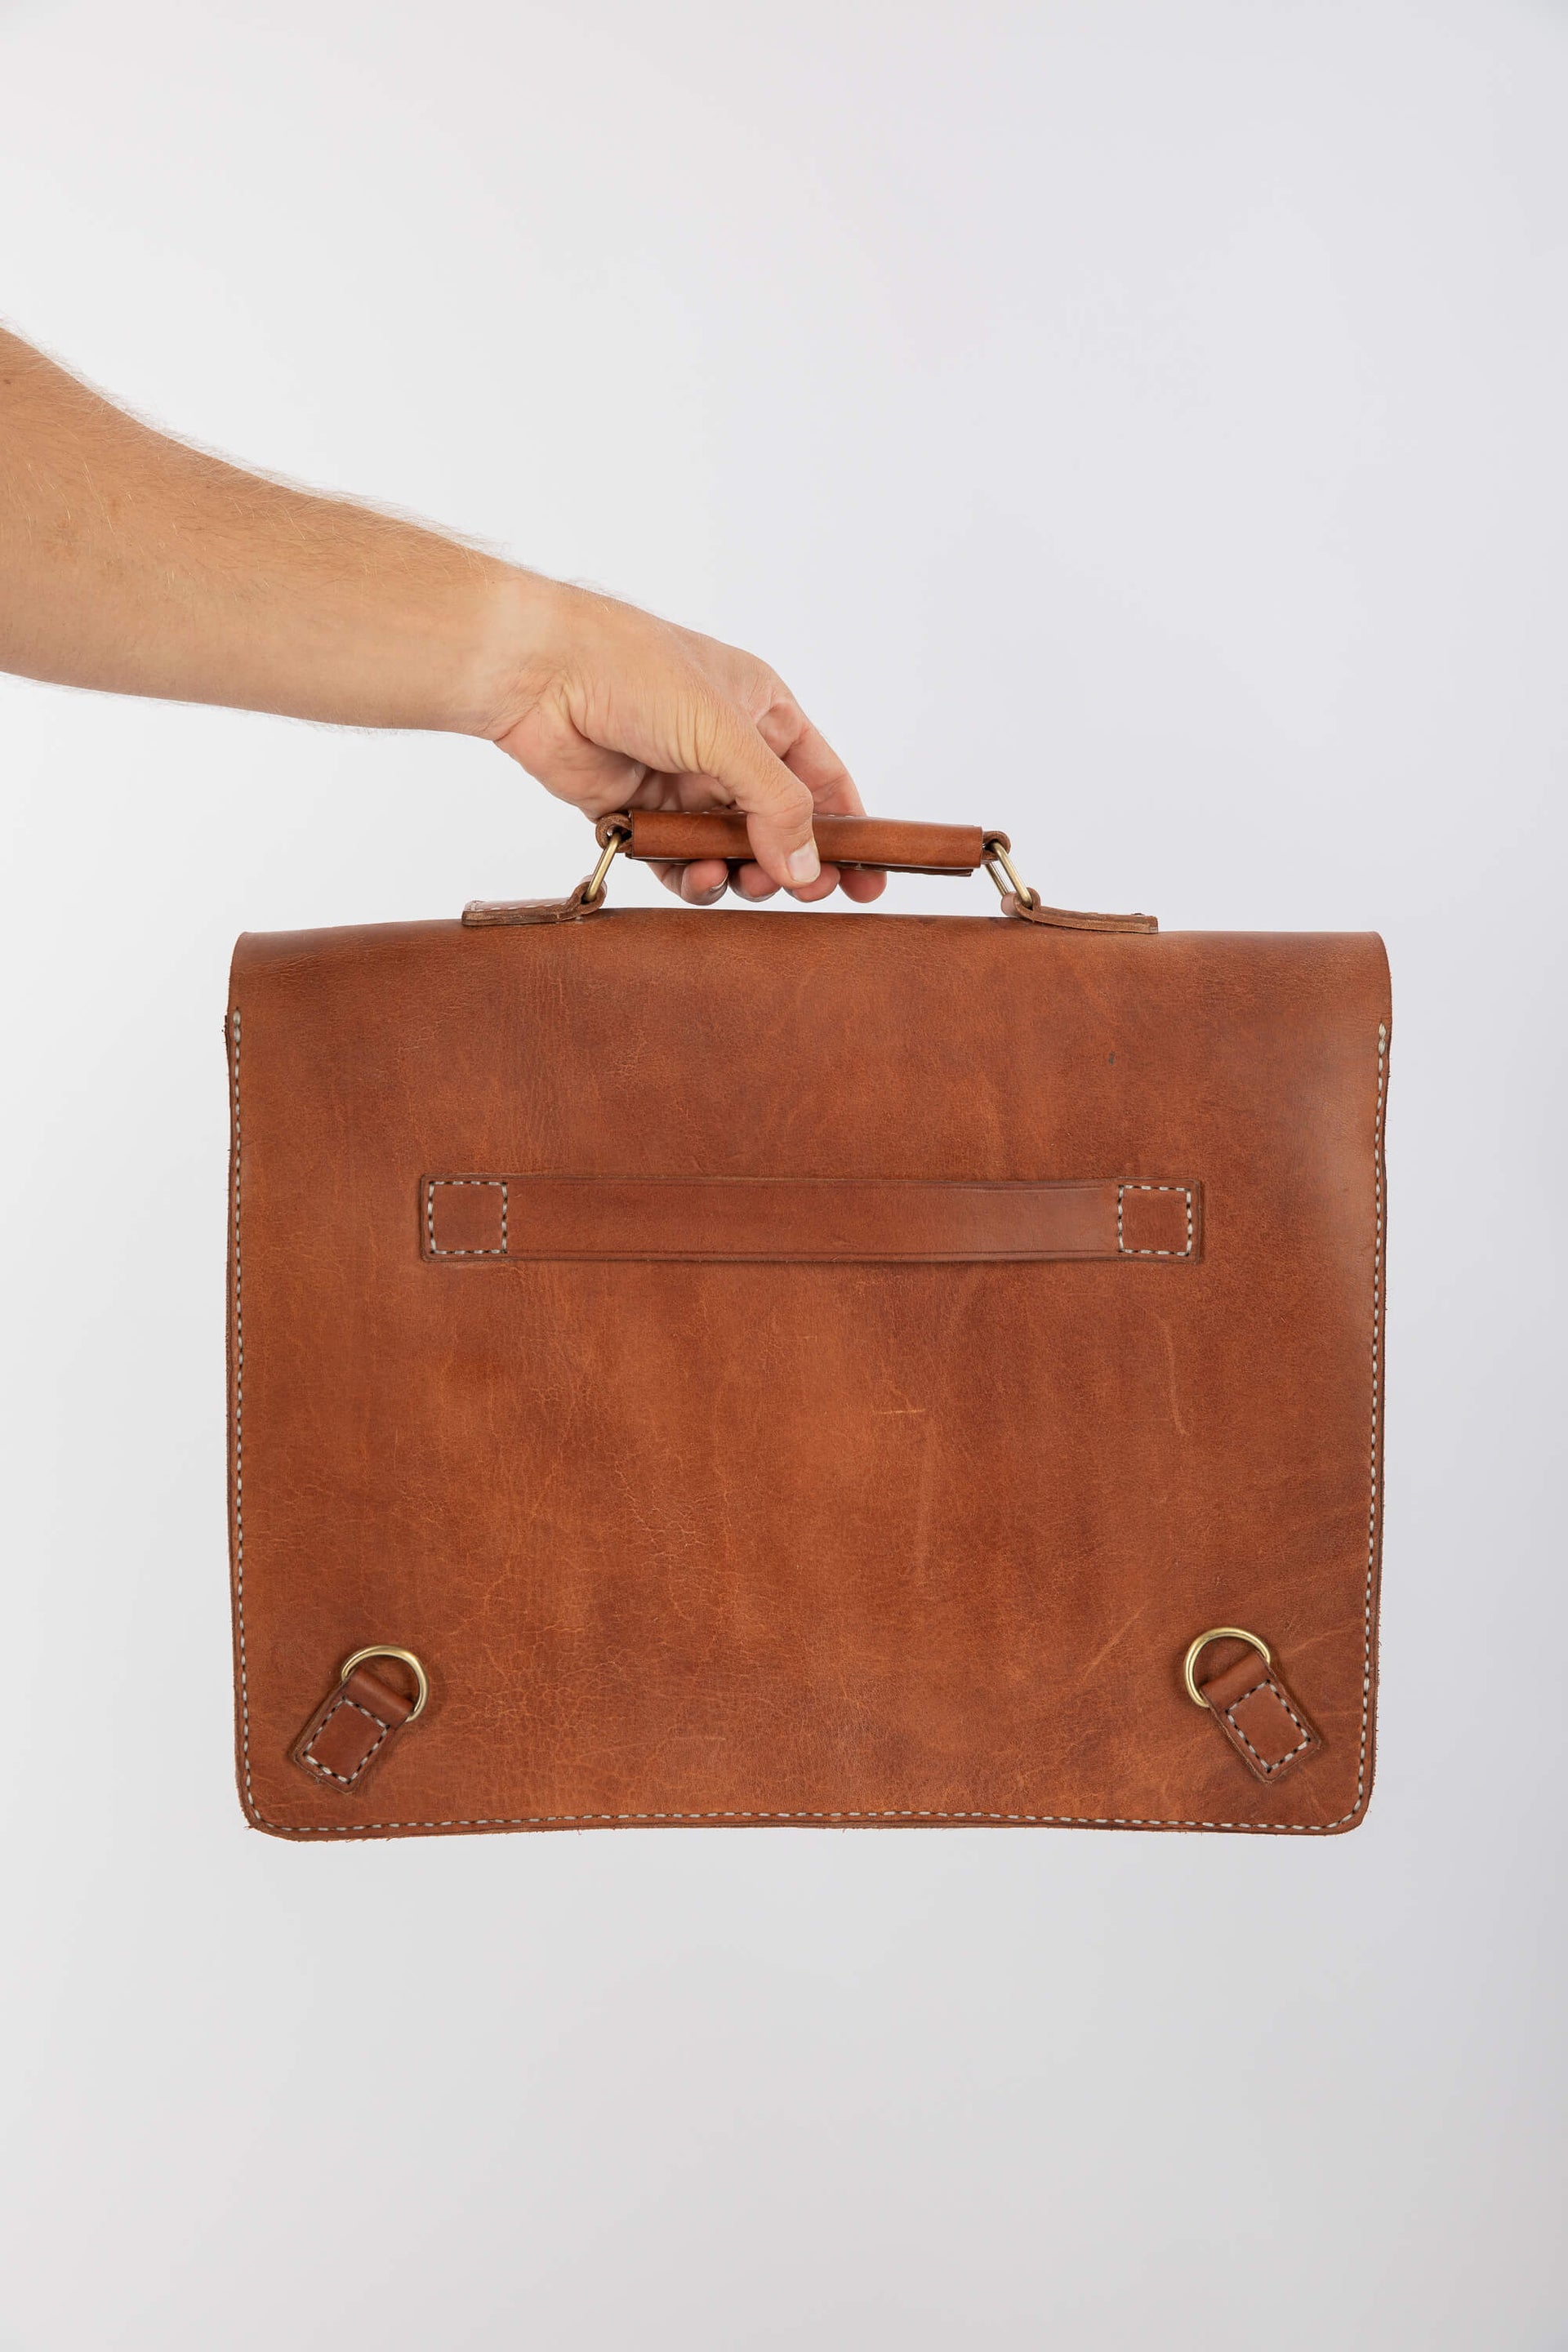 Leather Messenger Bag 15" Chestnut